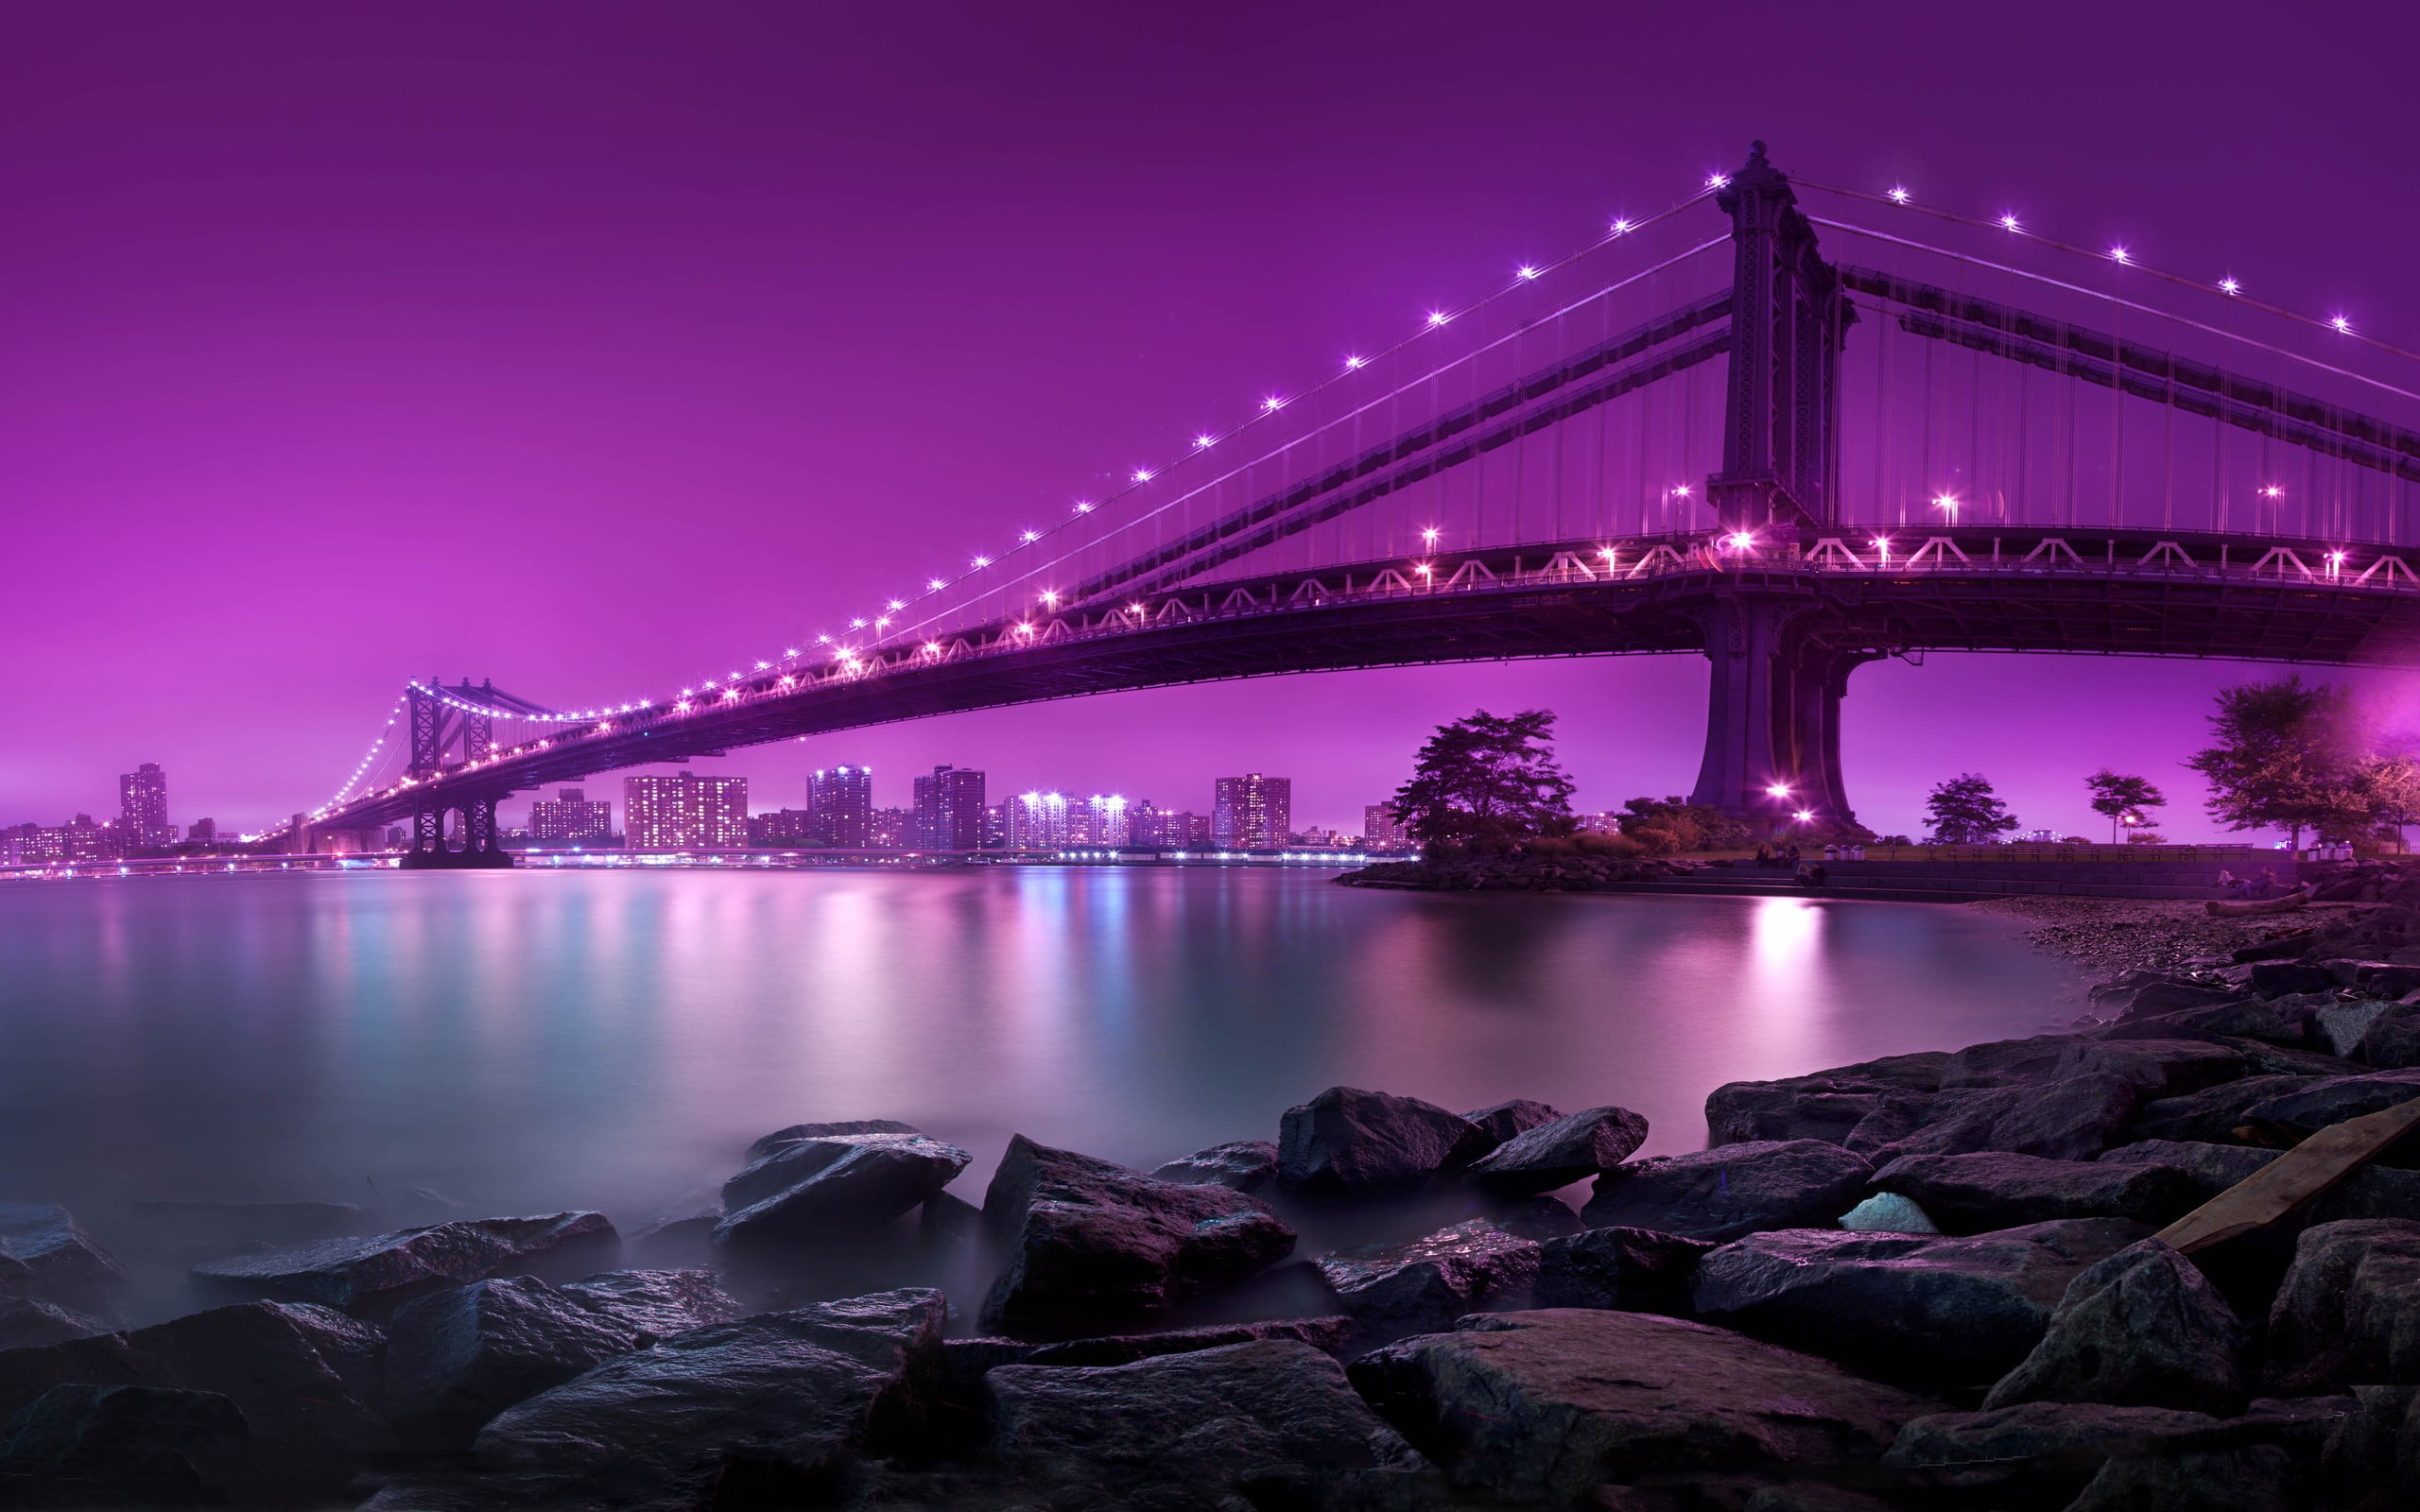 Bridge under purple sky wallpaper, bridge on top of water photo